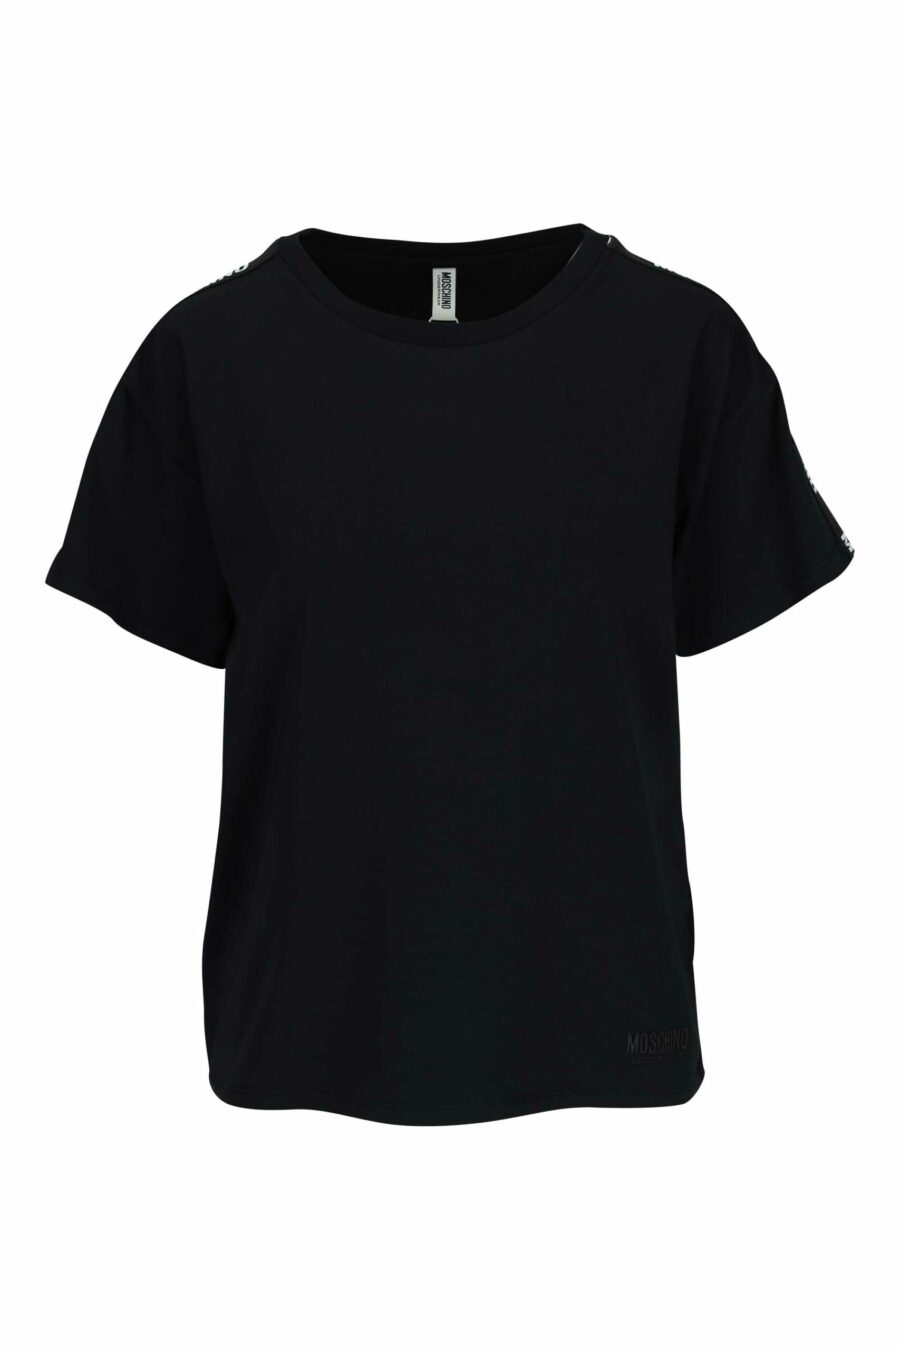 Camiseta negra con logo en cinta hombros blanco - 667113695549 scaled